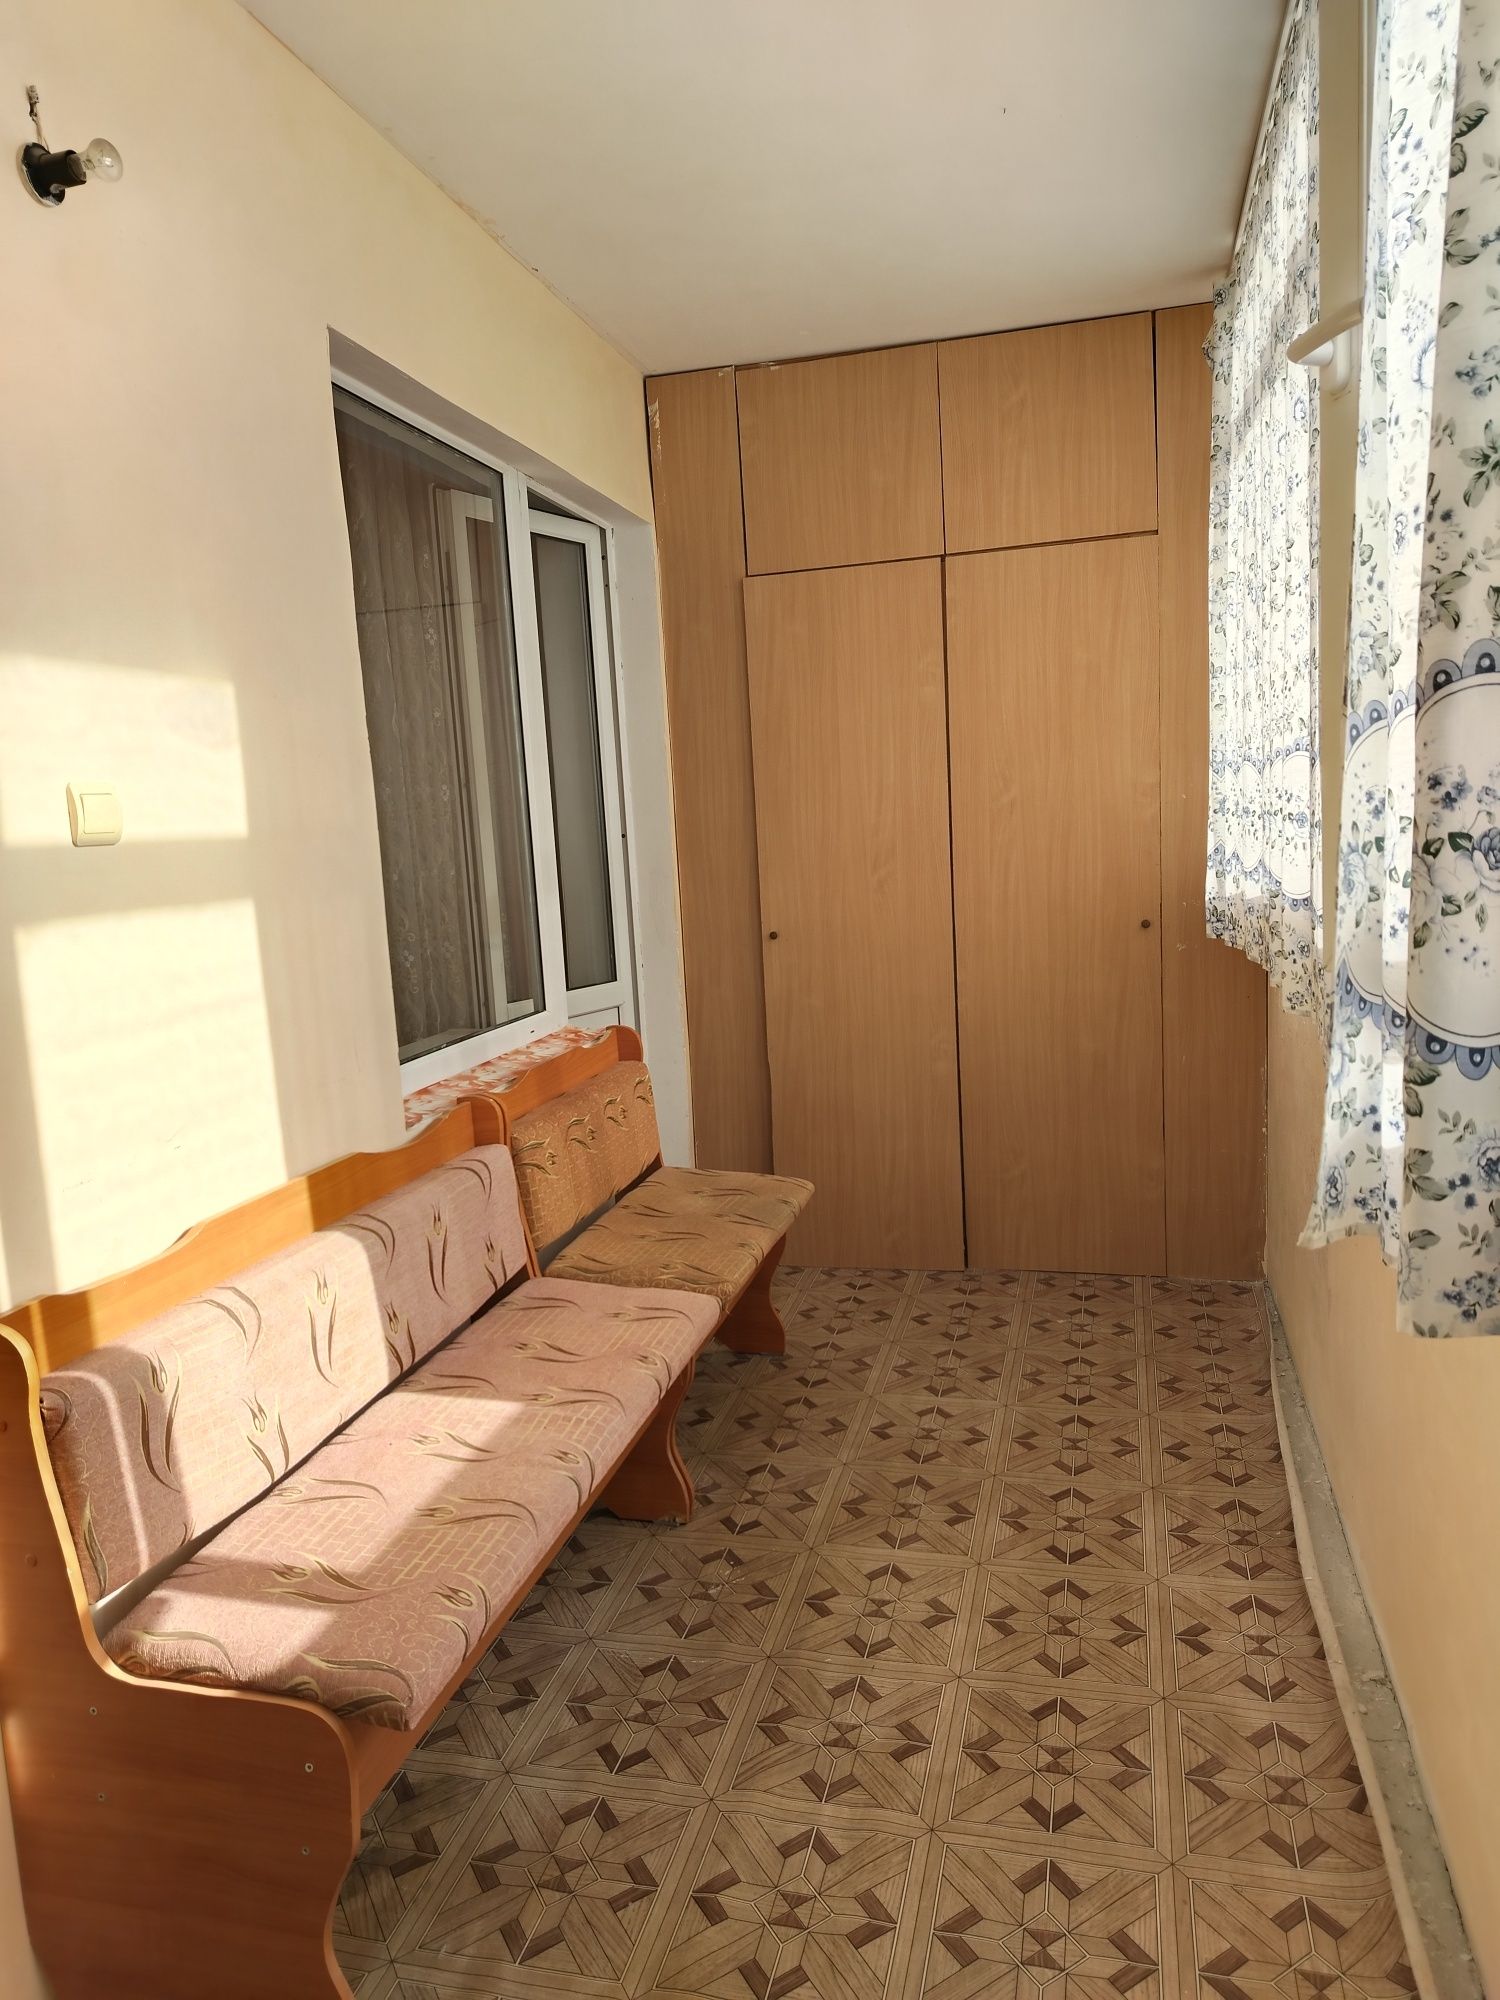 Продаётся 3-х комнатная квартира в городе Актау